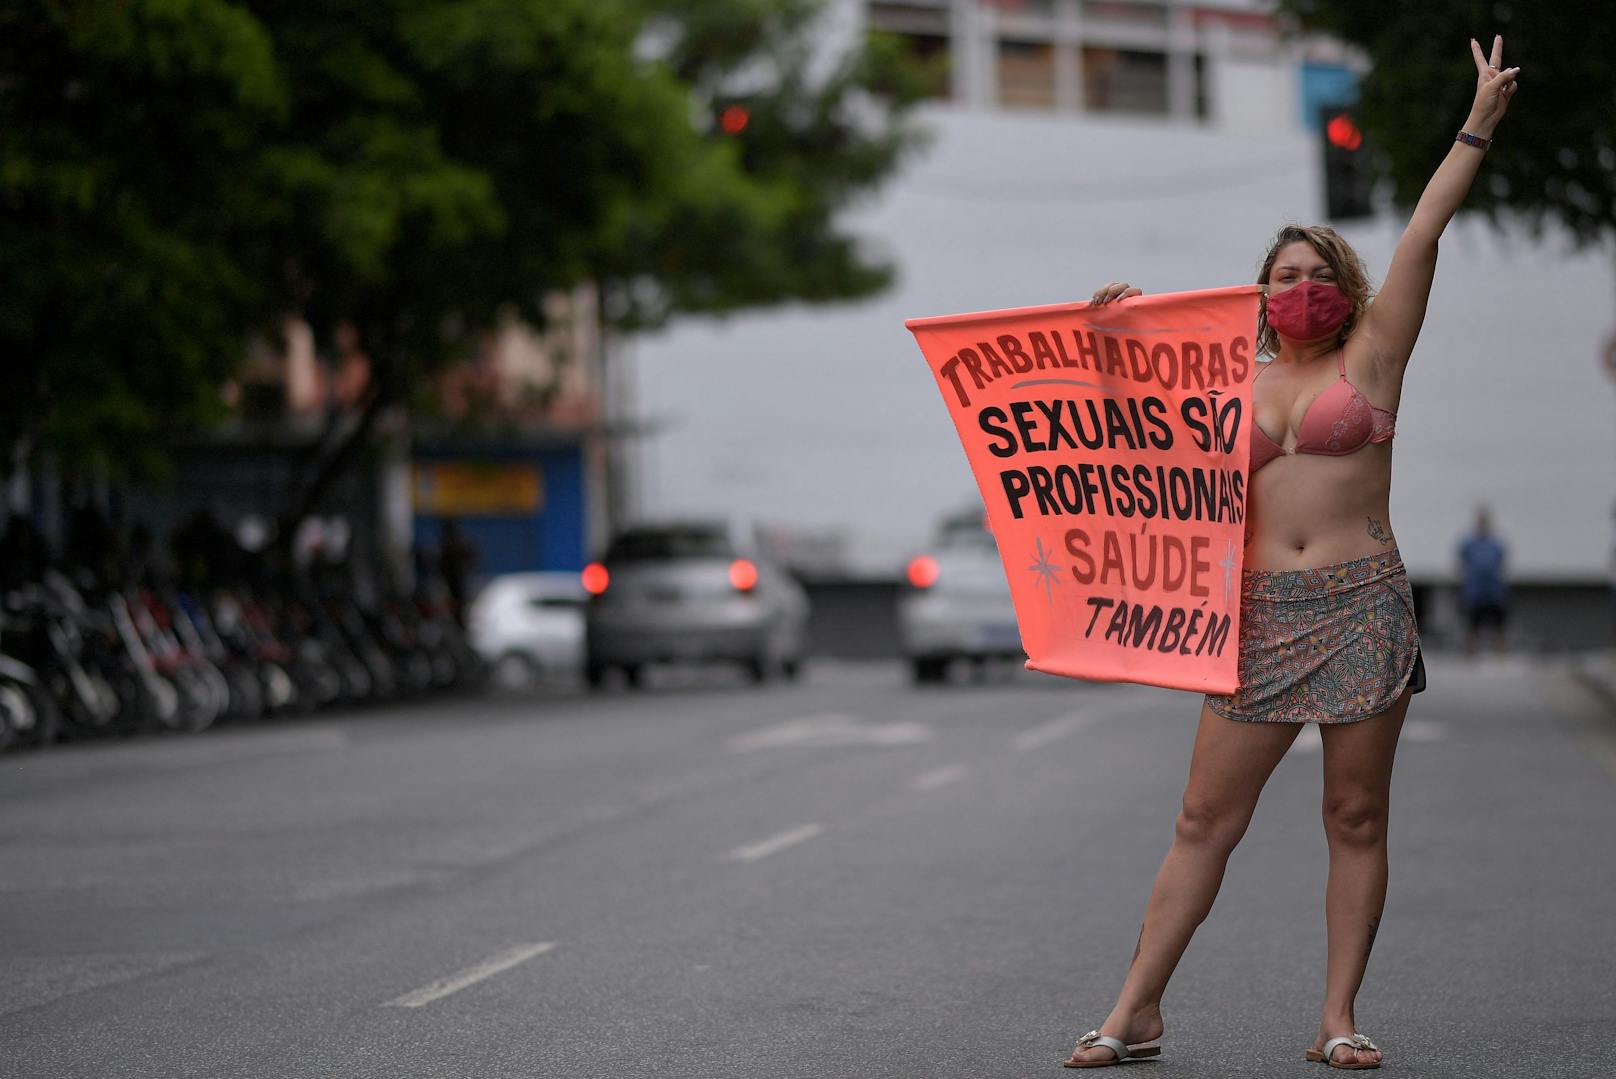 Prostituierte in Brasilien verlangen, dass sie sich schneller gegen Corona impfen lassen können.